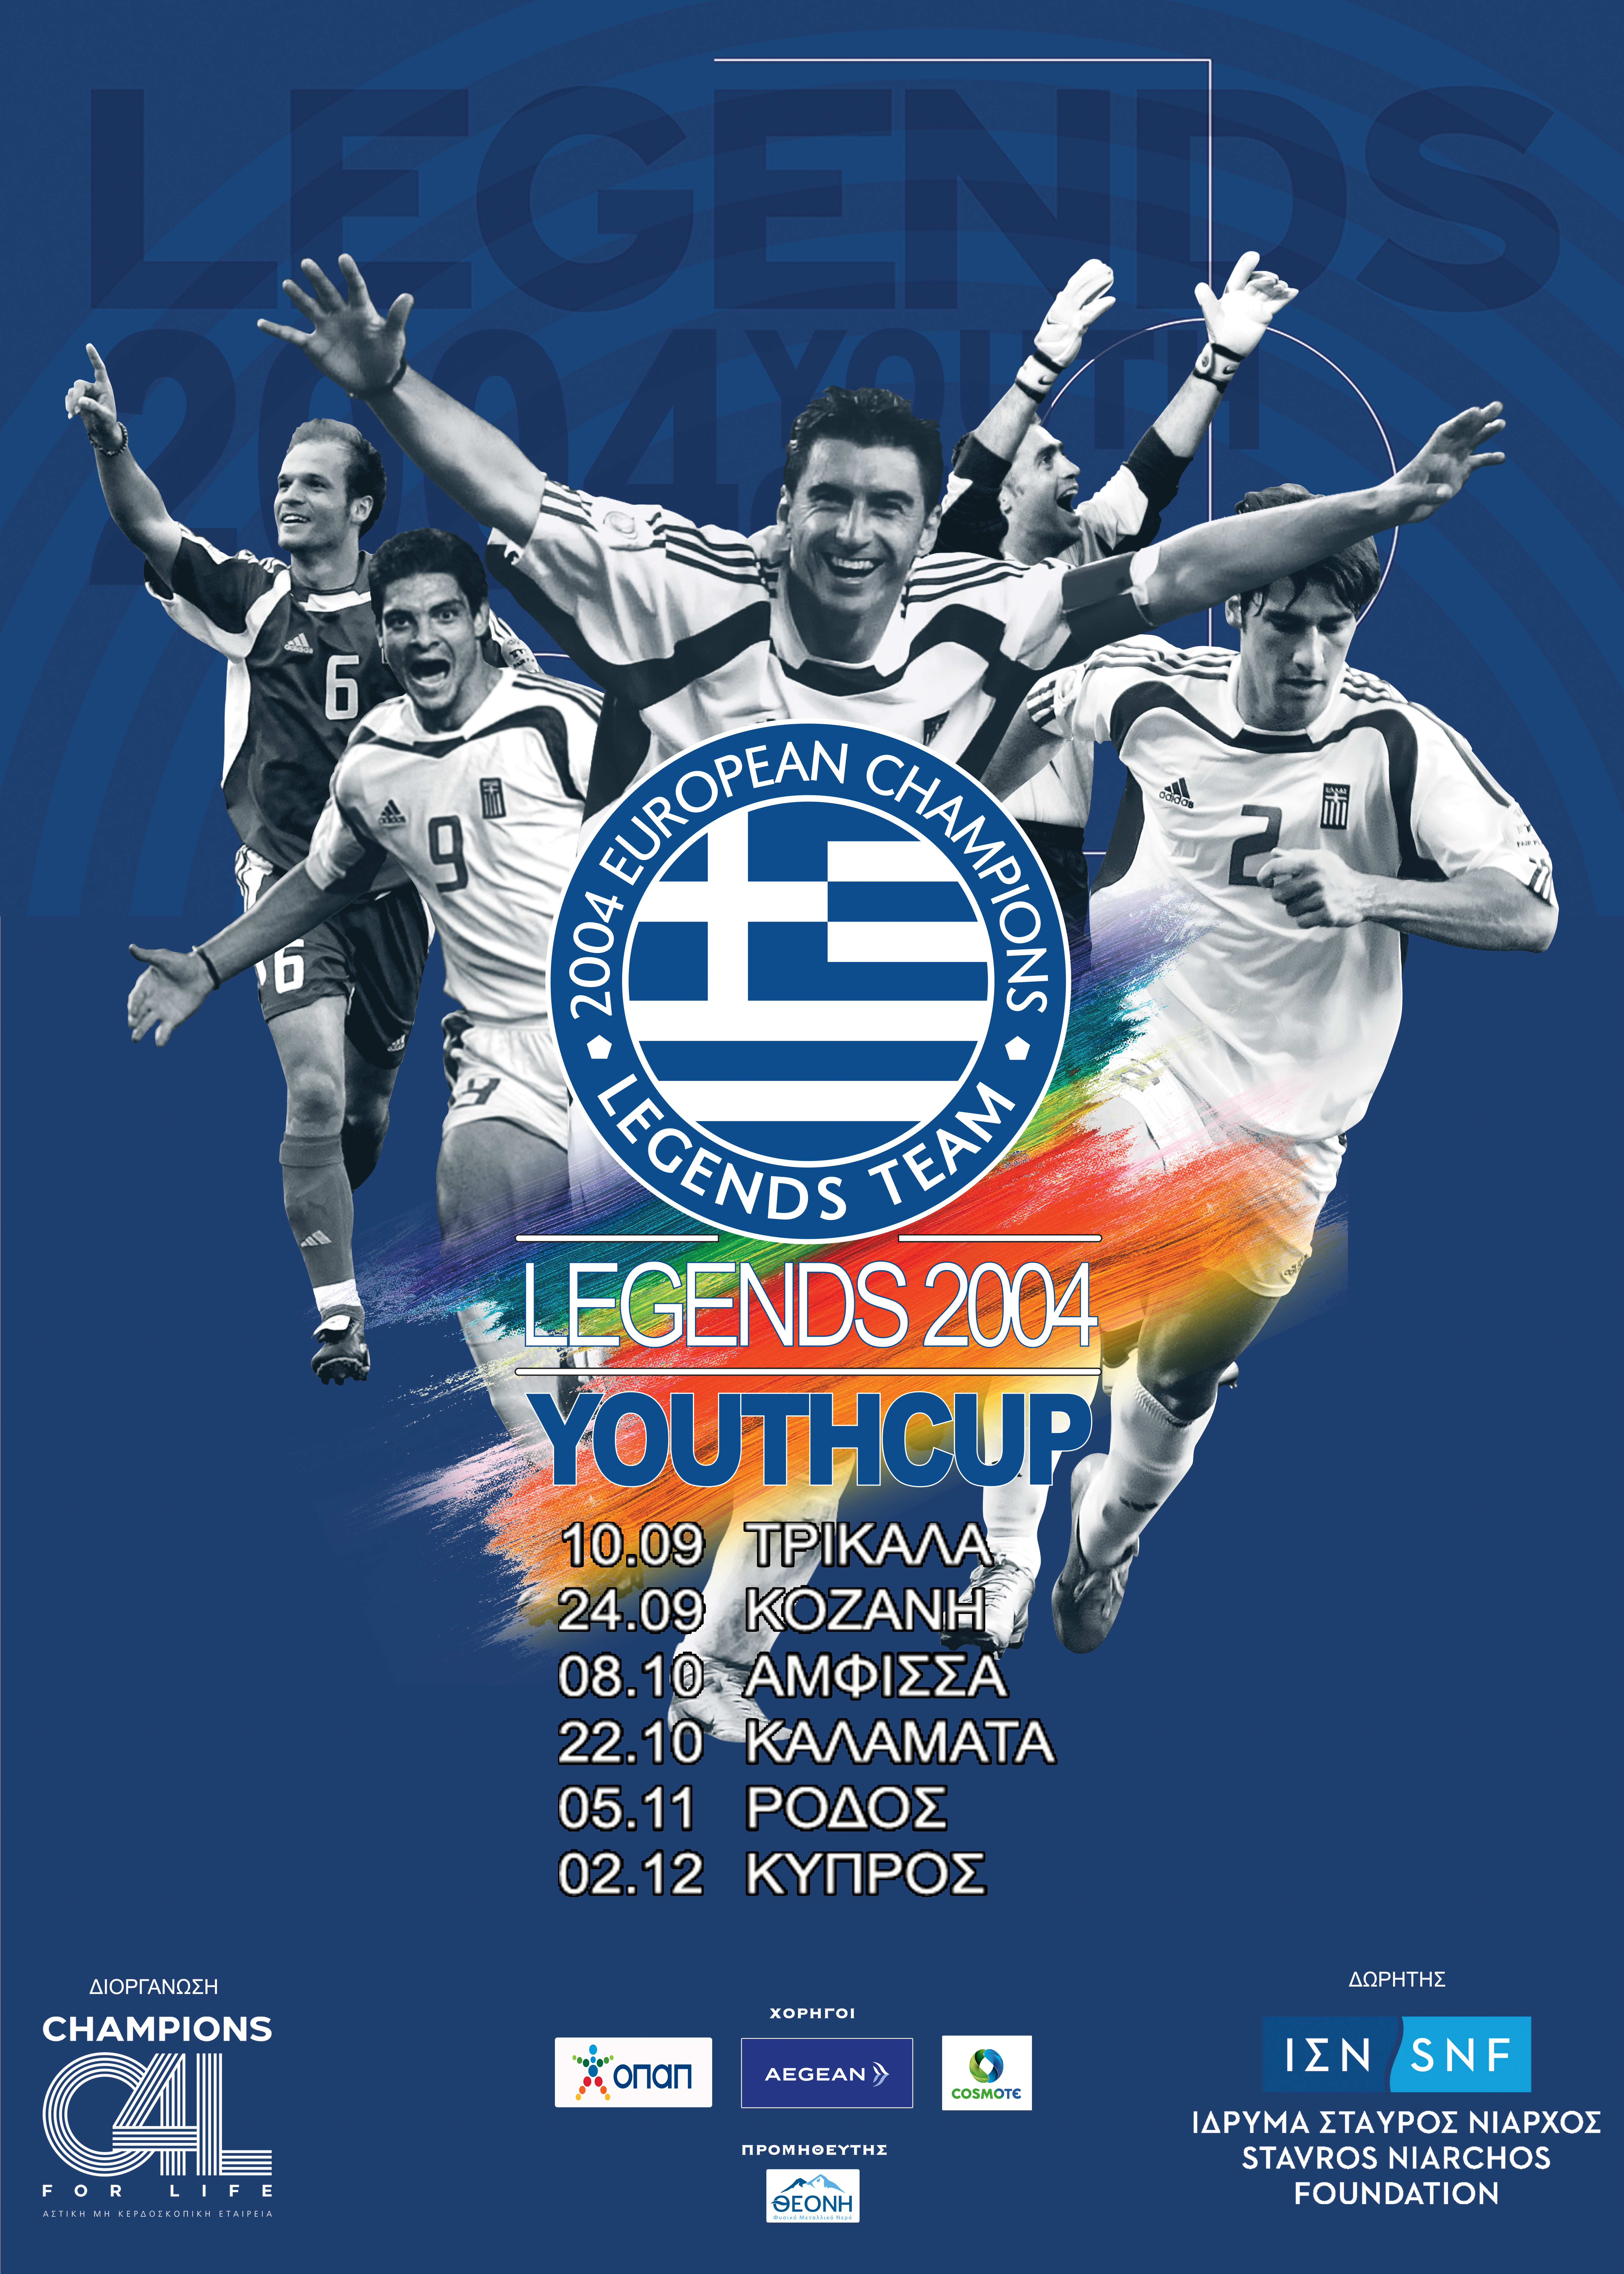 Το LEGENDS 2004 YOUTH CUP επιστρέφει με νέους προορισμούς σε Ελλάδα και Κύπρο